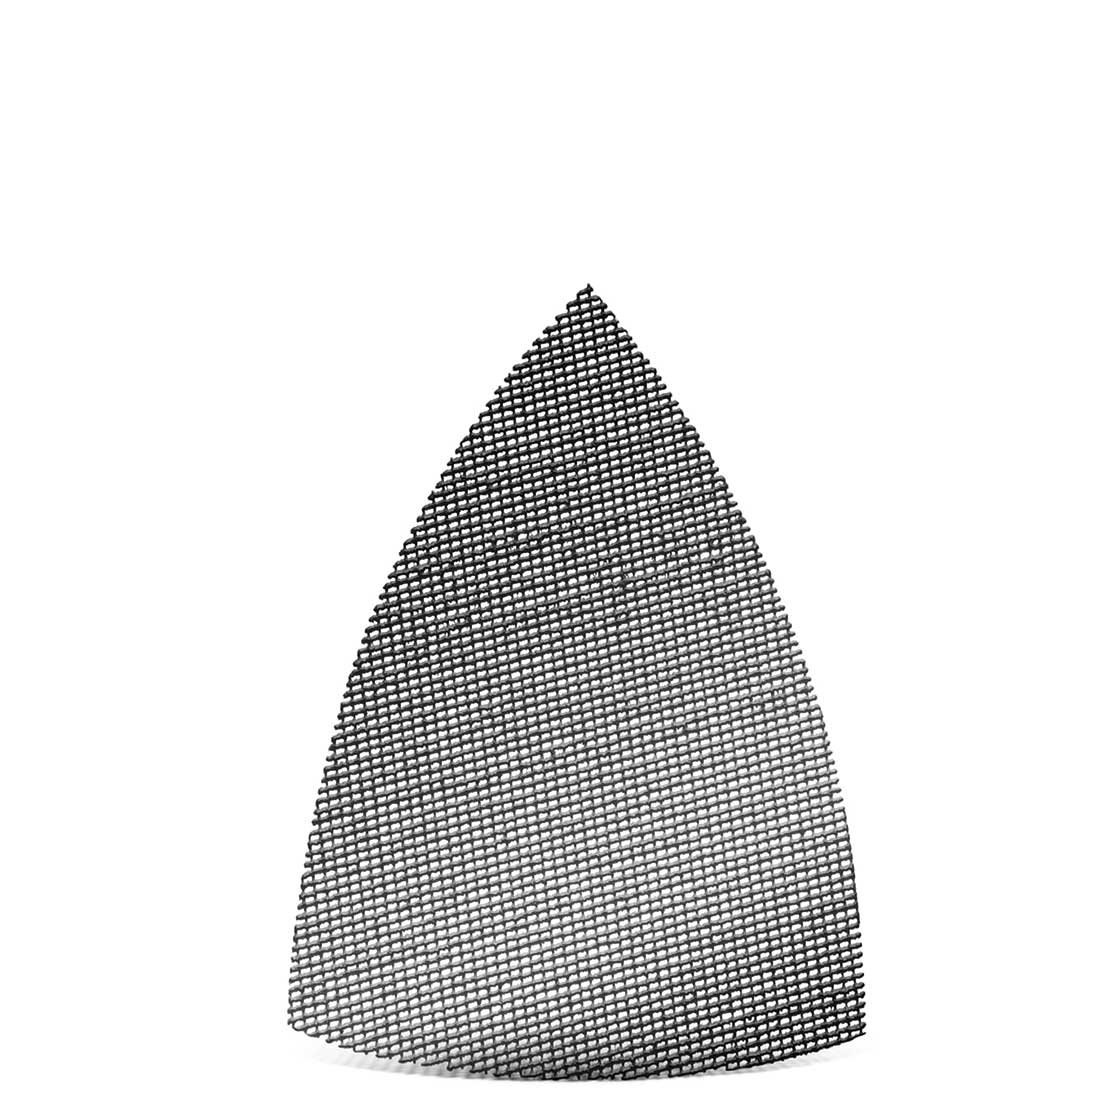 MENZER Klett-Schleifgitter für Deltaschleifer, K60–180, 150 x 100 mm / Gitter / Siliciumcarbid